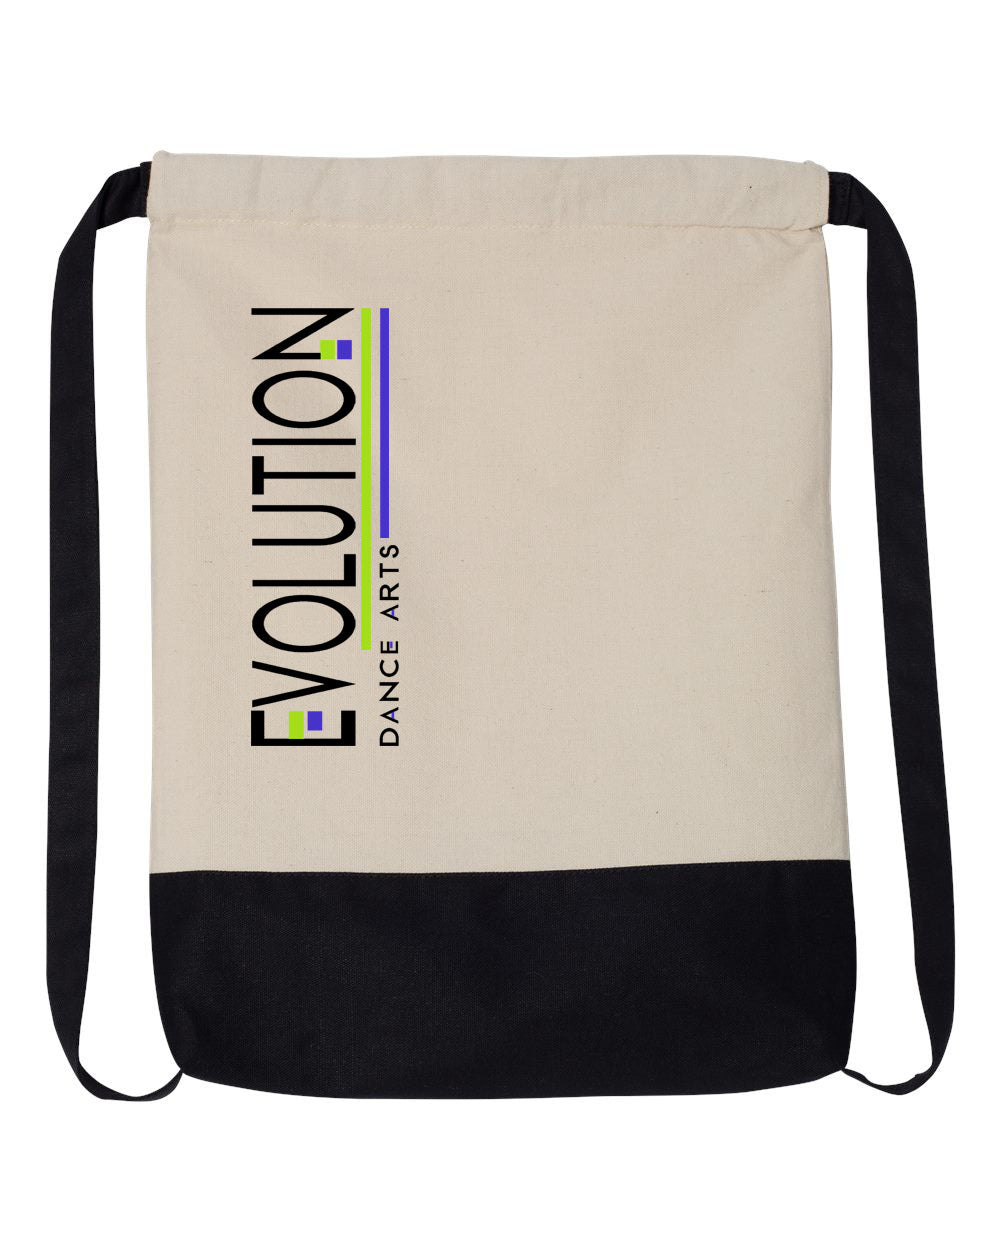 Evolution Dance Arts design 5 Drawstring Bag